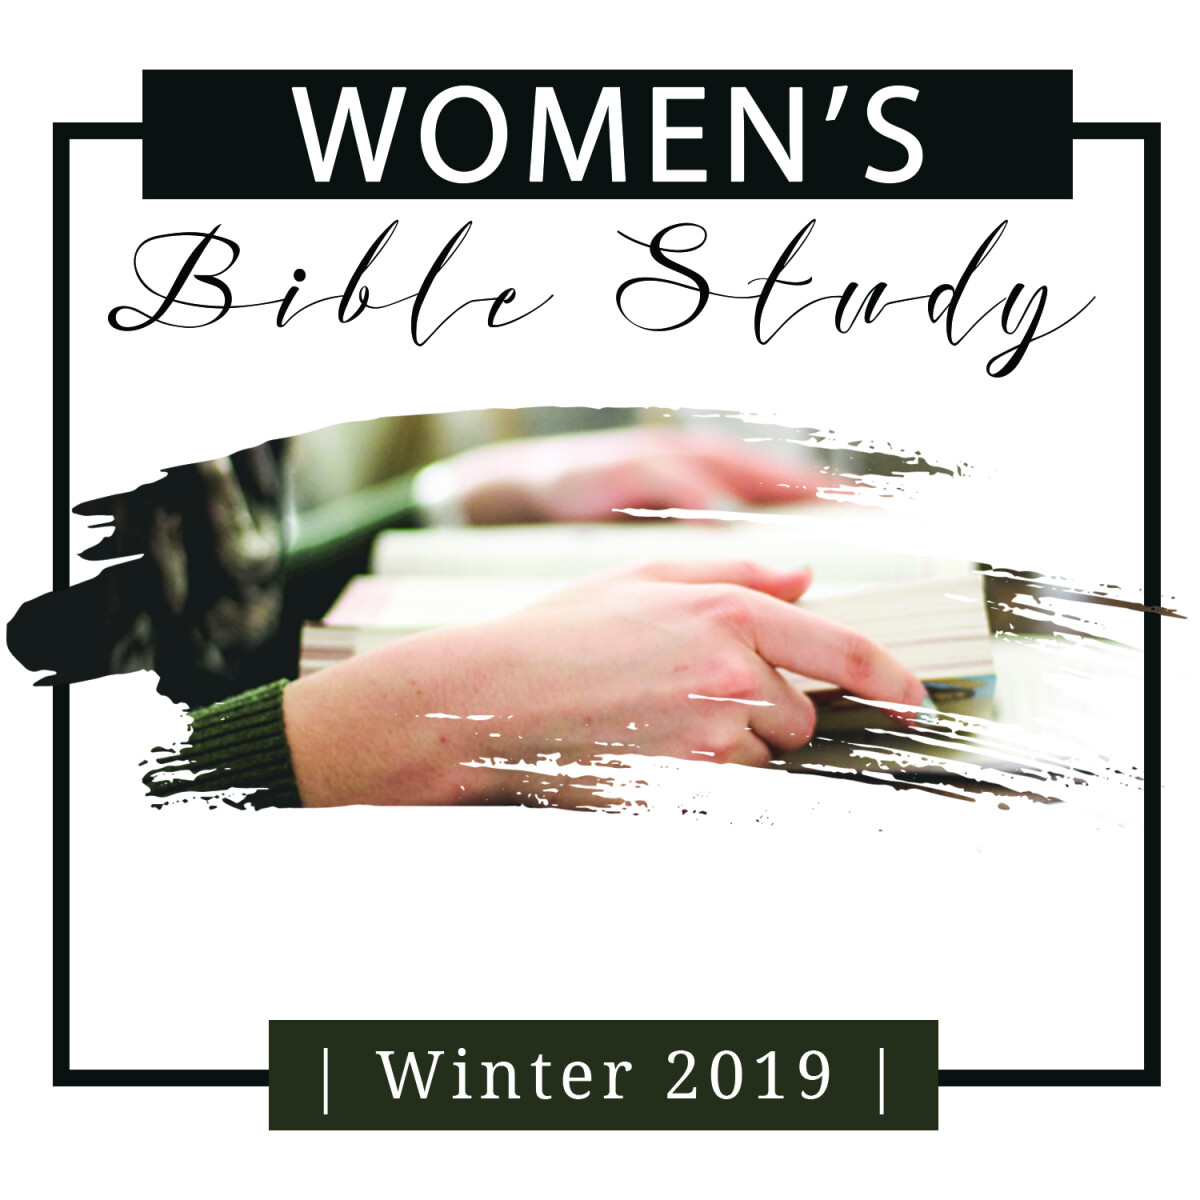 Women’s Tuesday AM Bible Studies, 